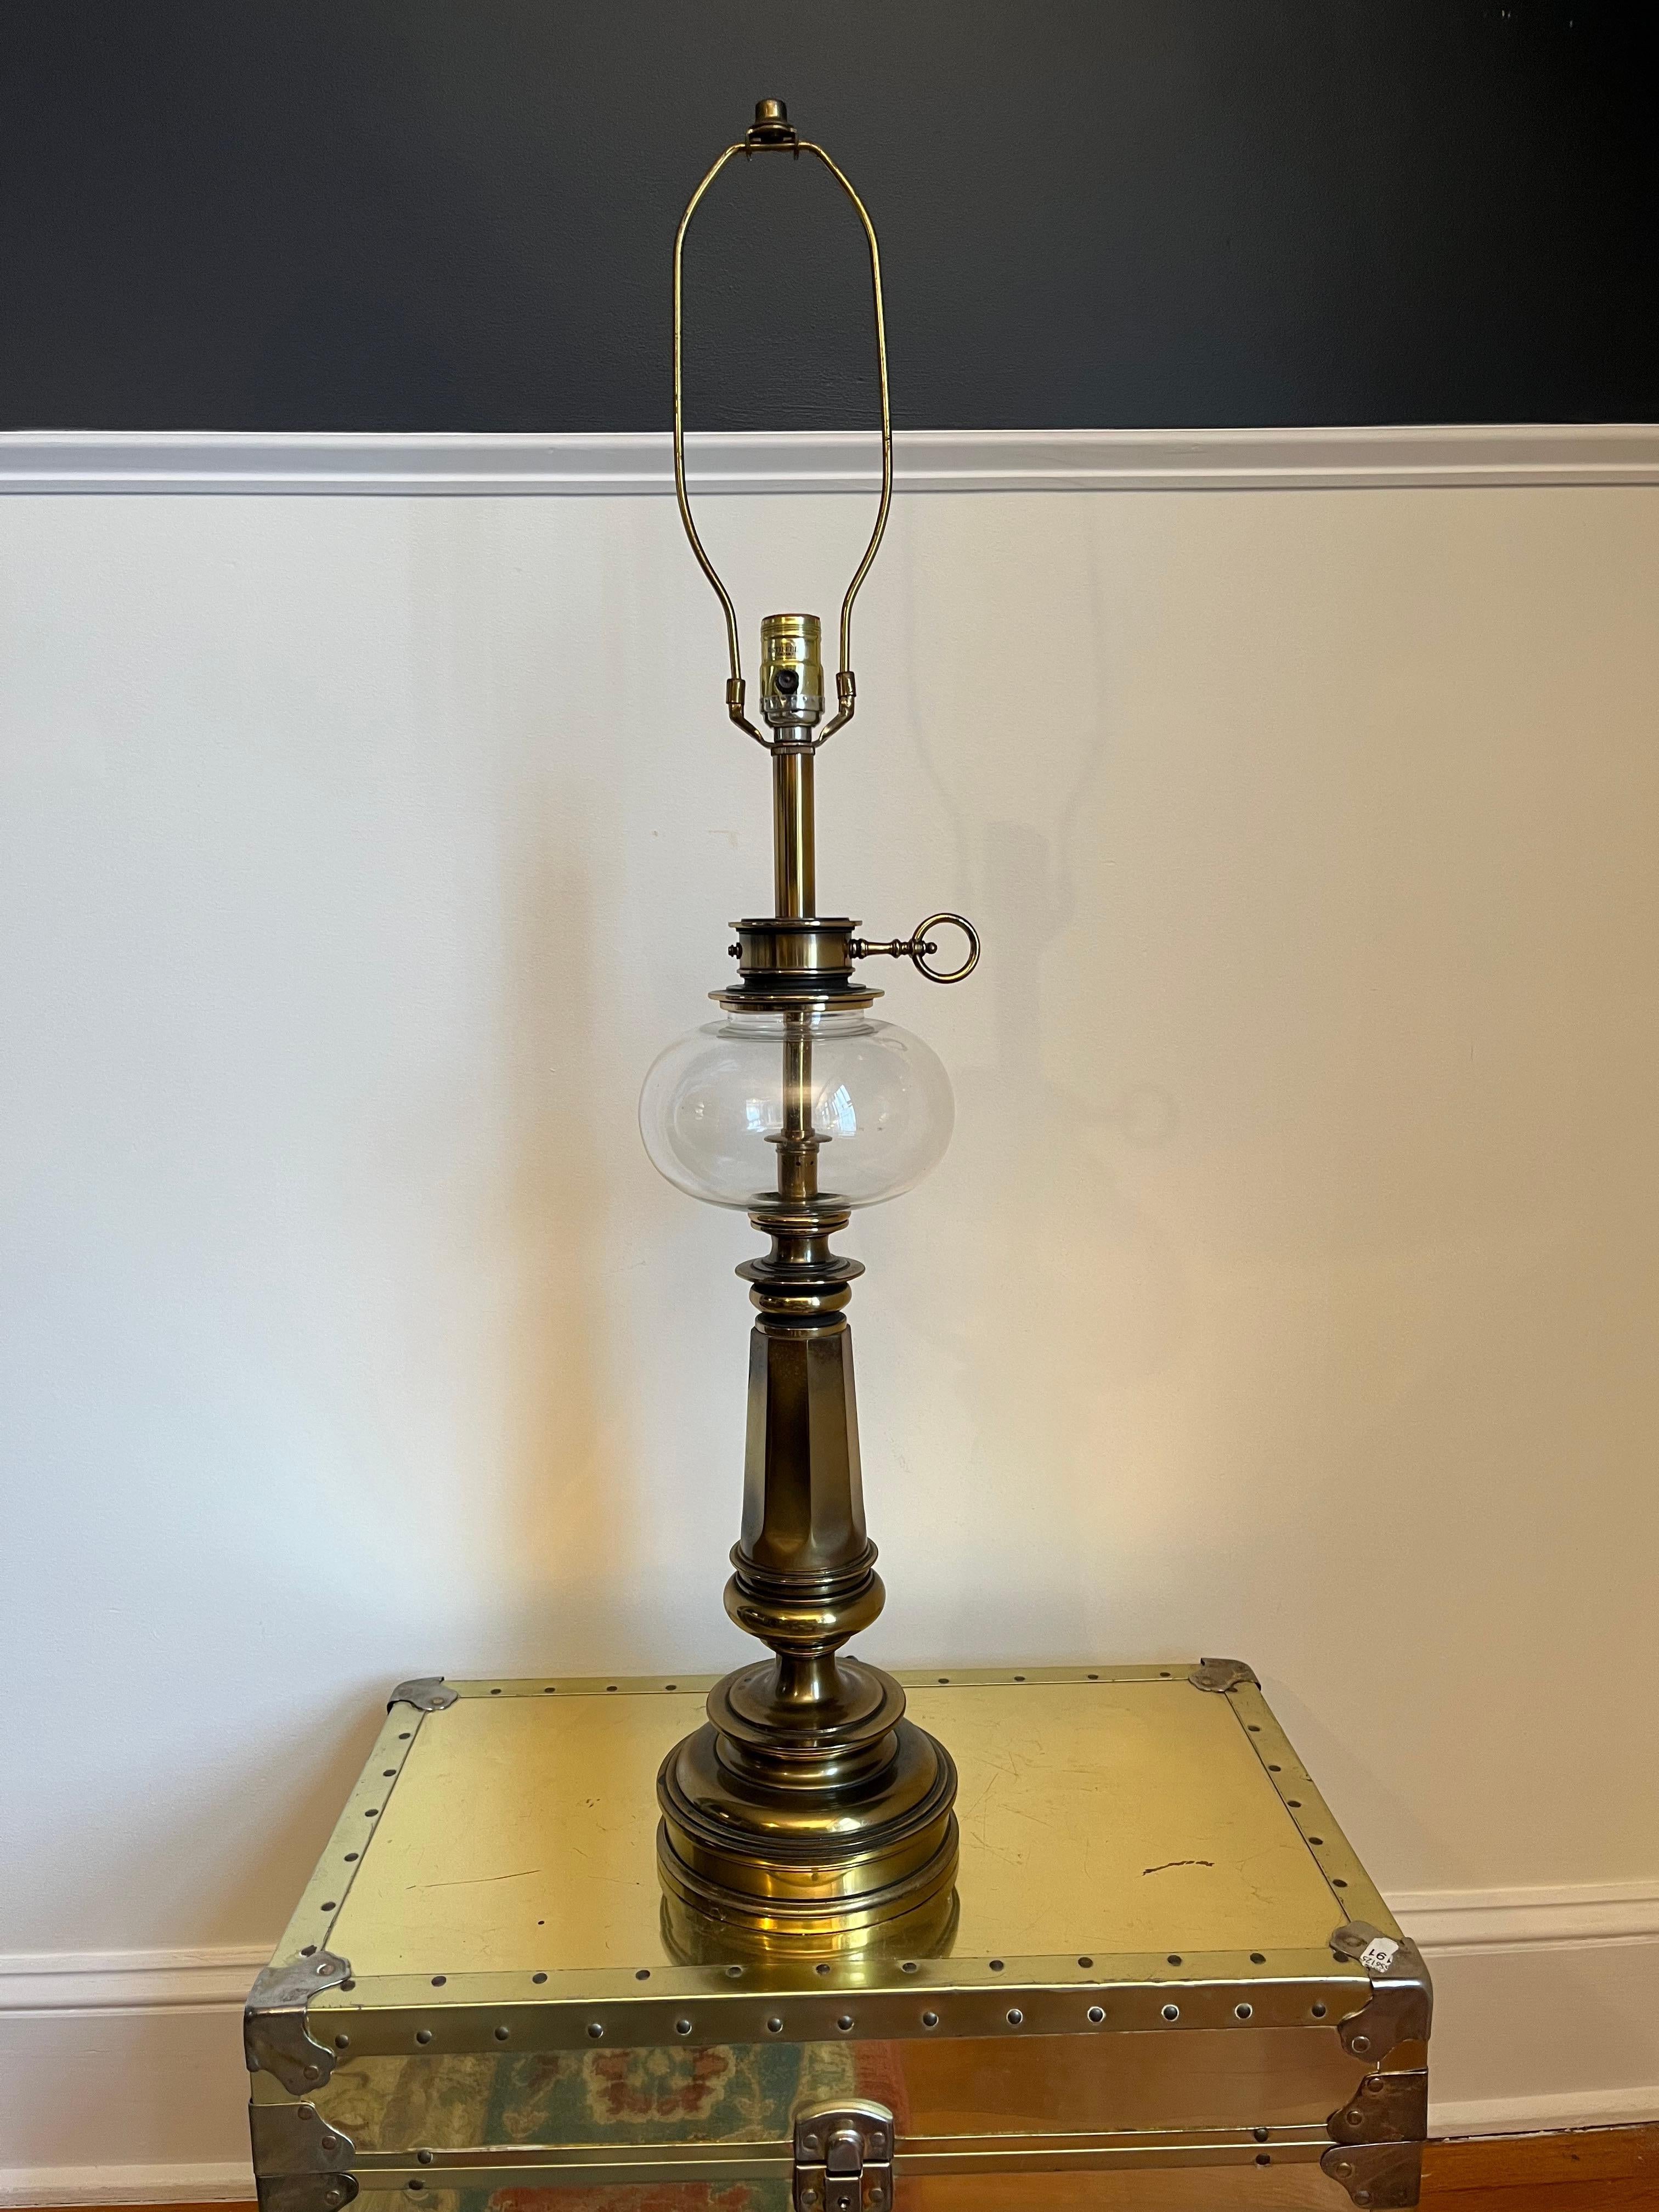 Lampe de table vintage de style lampe à huile avec base colonne cannelée en laiton. Réservoir d'huile volumineux et bulbeux avec tour de clé.  Allumez la base et la prise. Design classique.
En bordure de route vers NYC/Philly $300